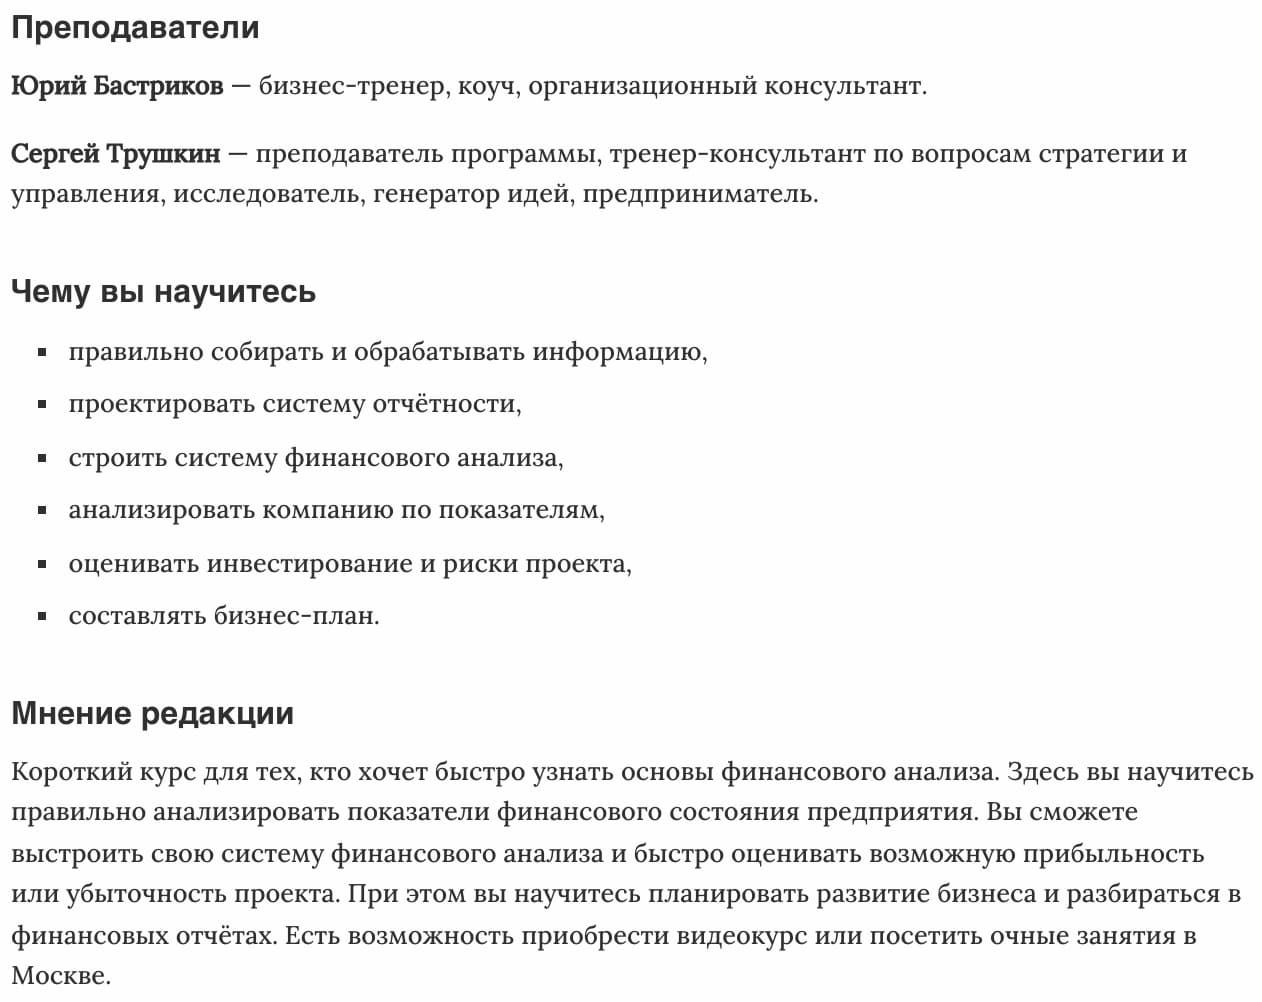 Мнение редакции «Финансовый анализ бизнеса» от Русской Школы Управления